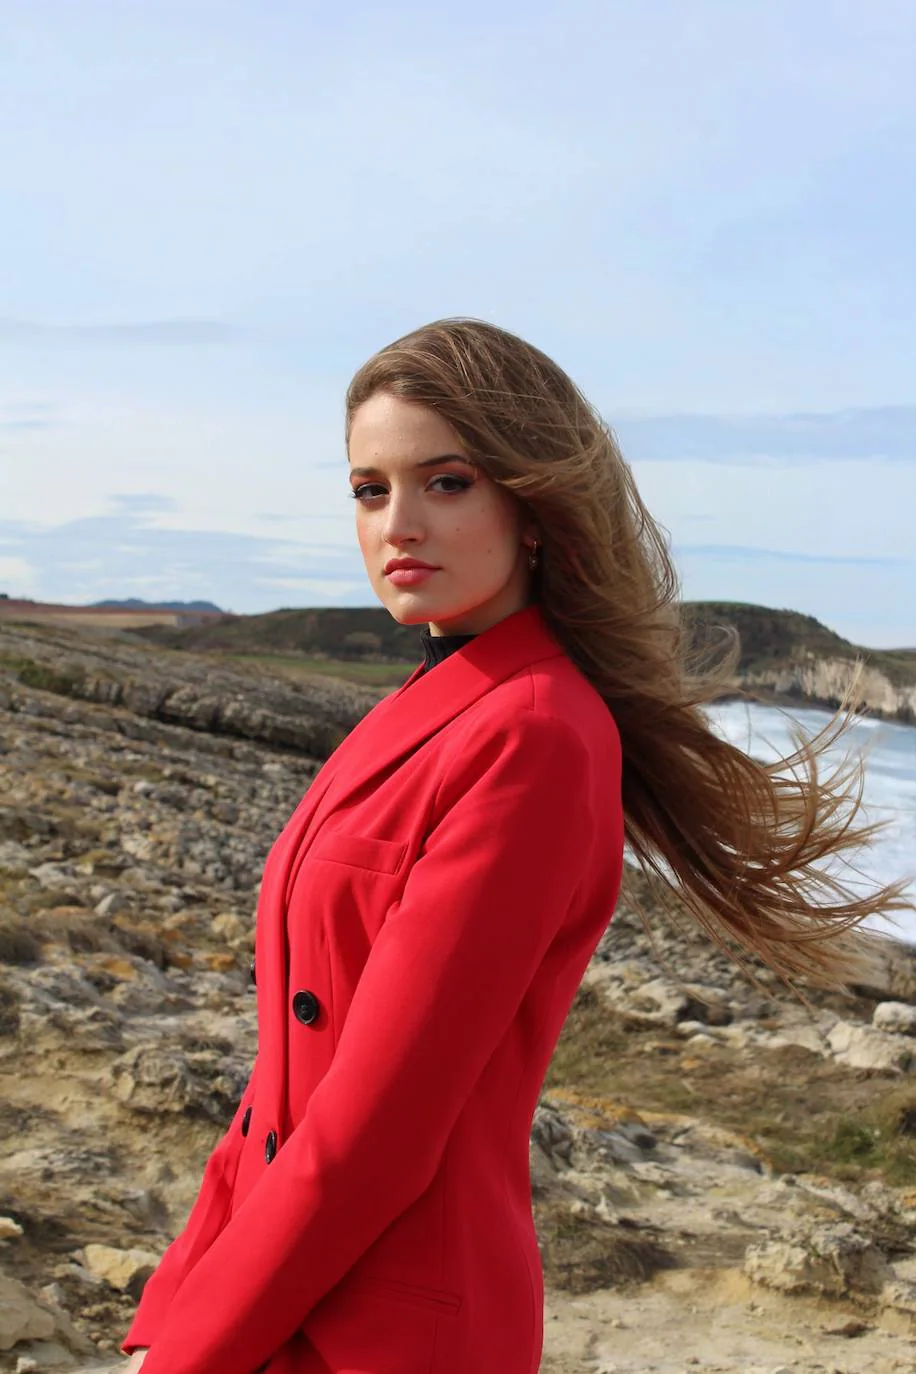 La joven santanderina, que estudia violín y piano, se une a la familia de Cantabria DModa en los que compartirá vídeos de moda y belleza 